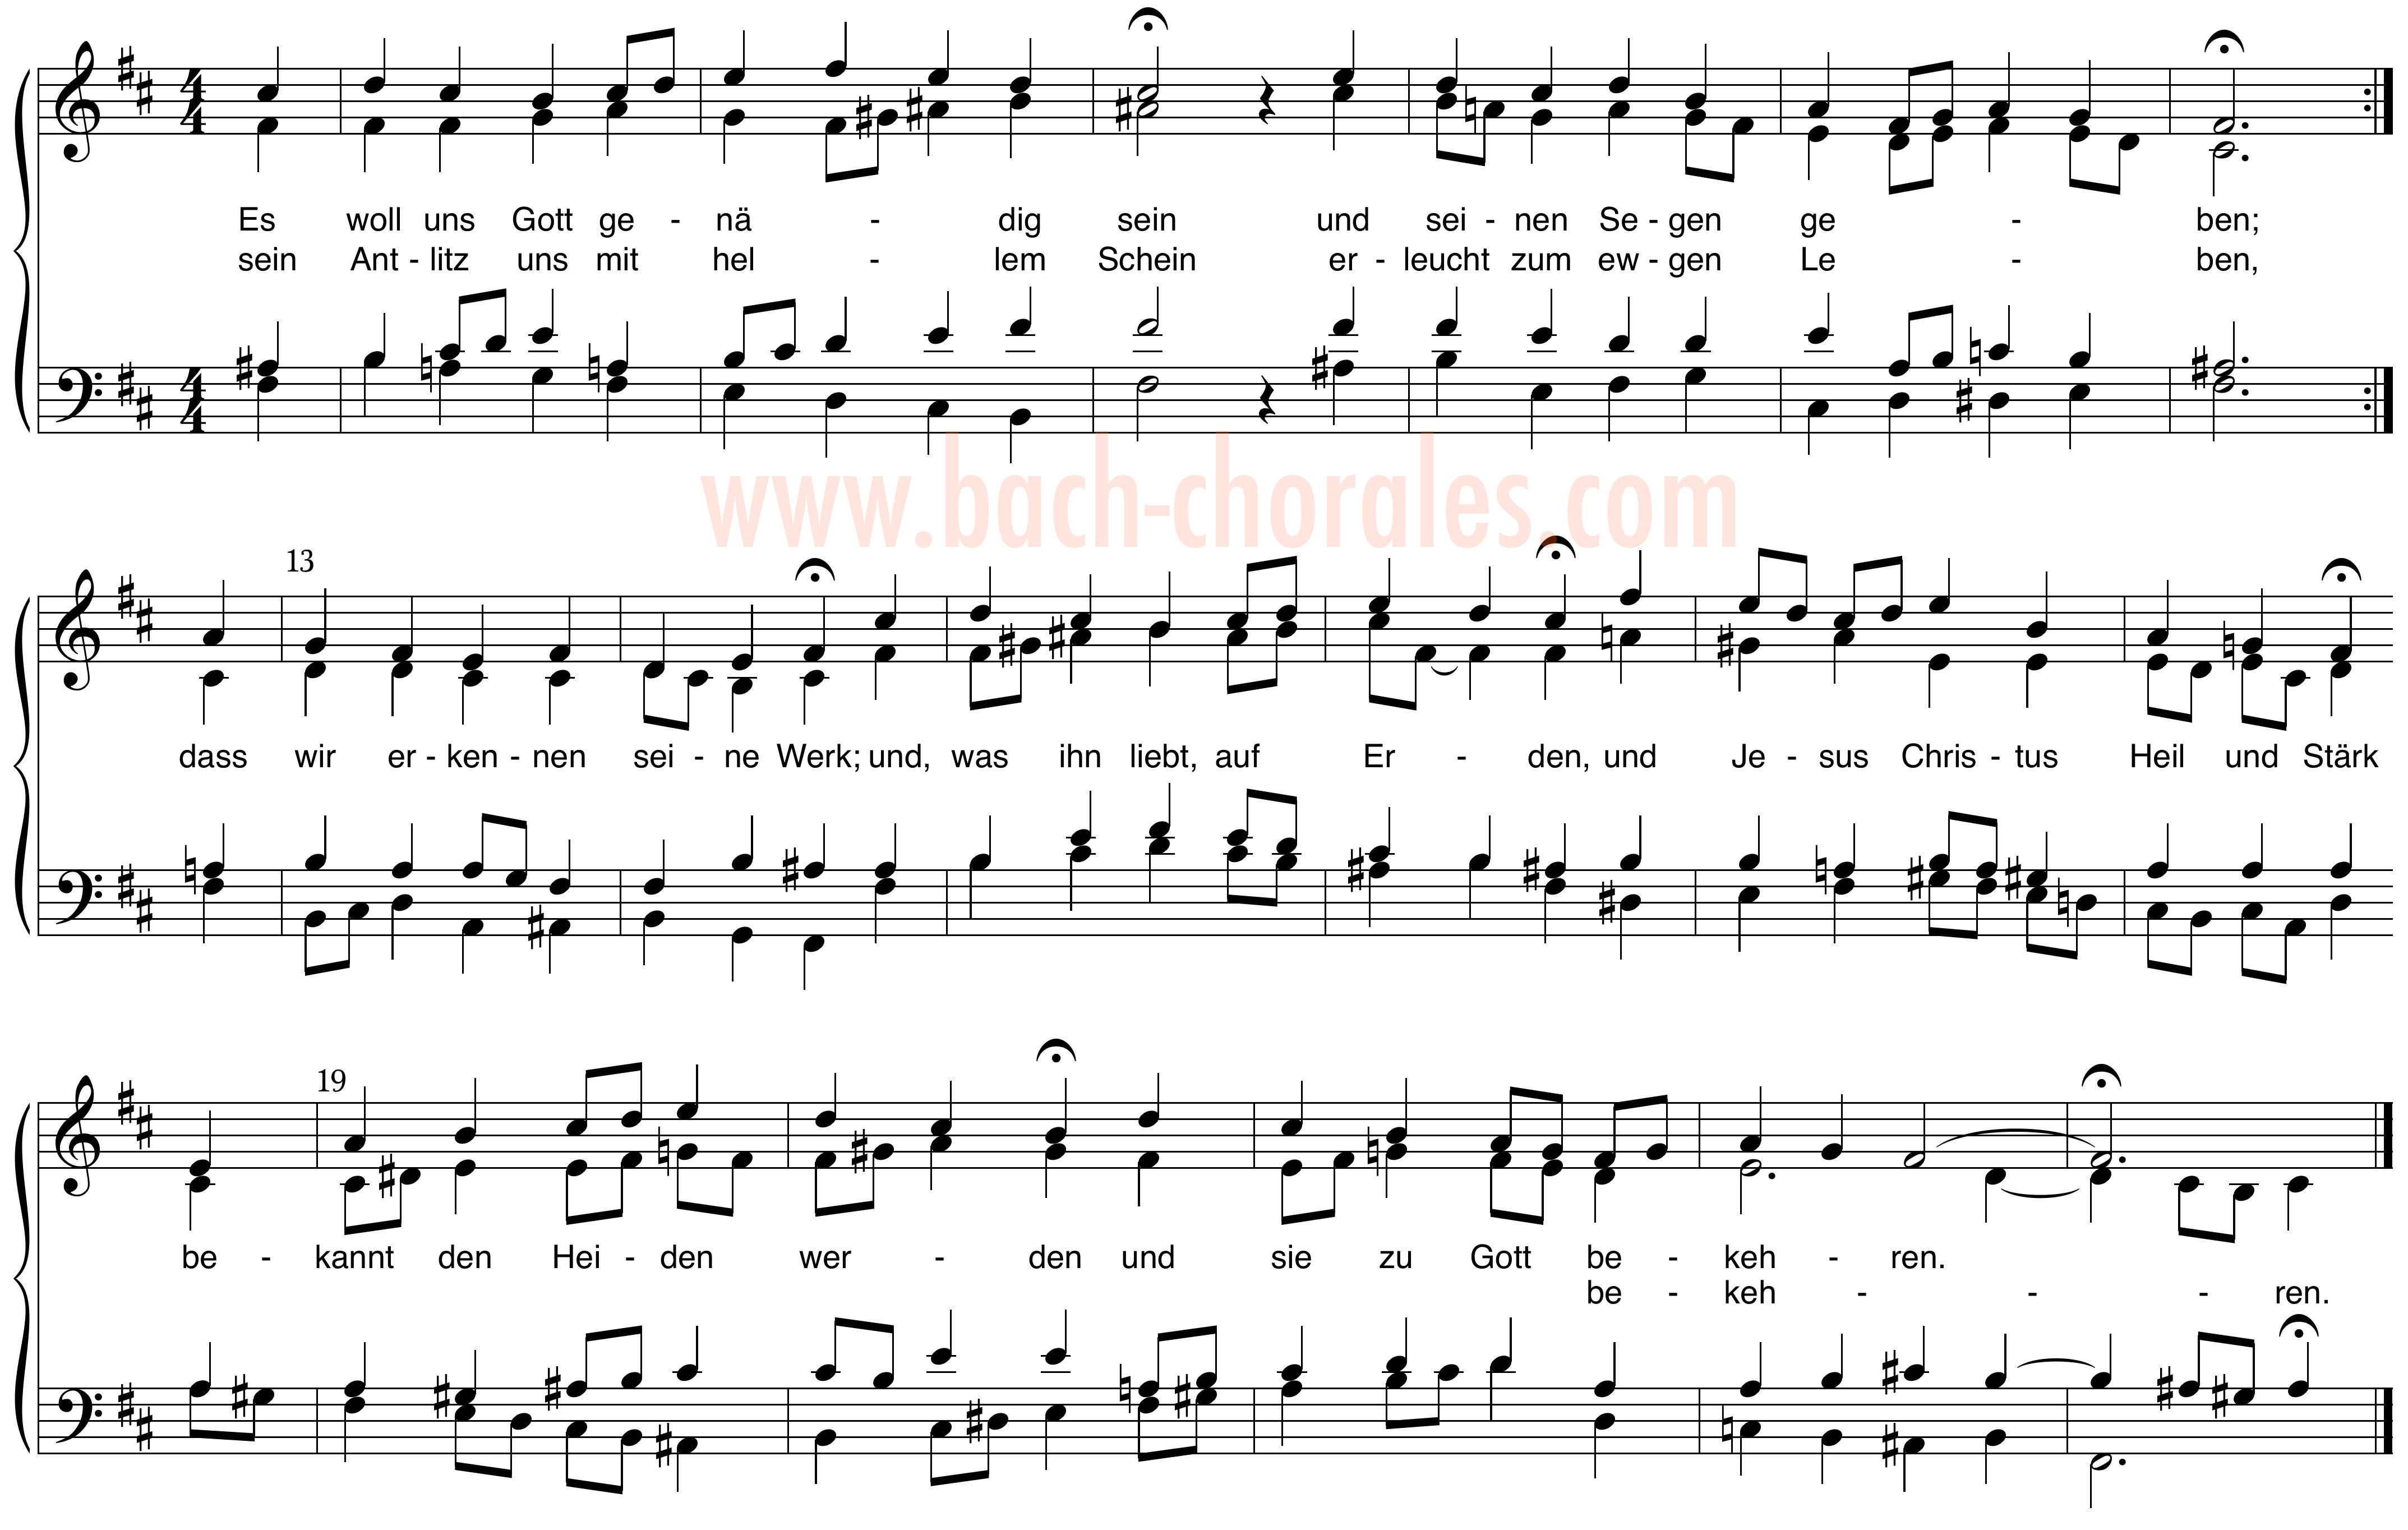 notenbeeld BWV 311 op https://www.bach-chorales.com/